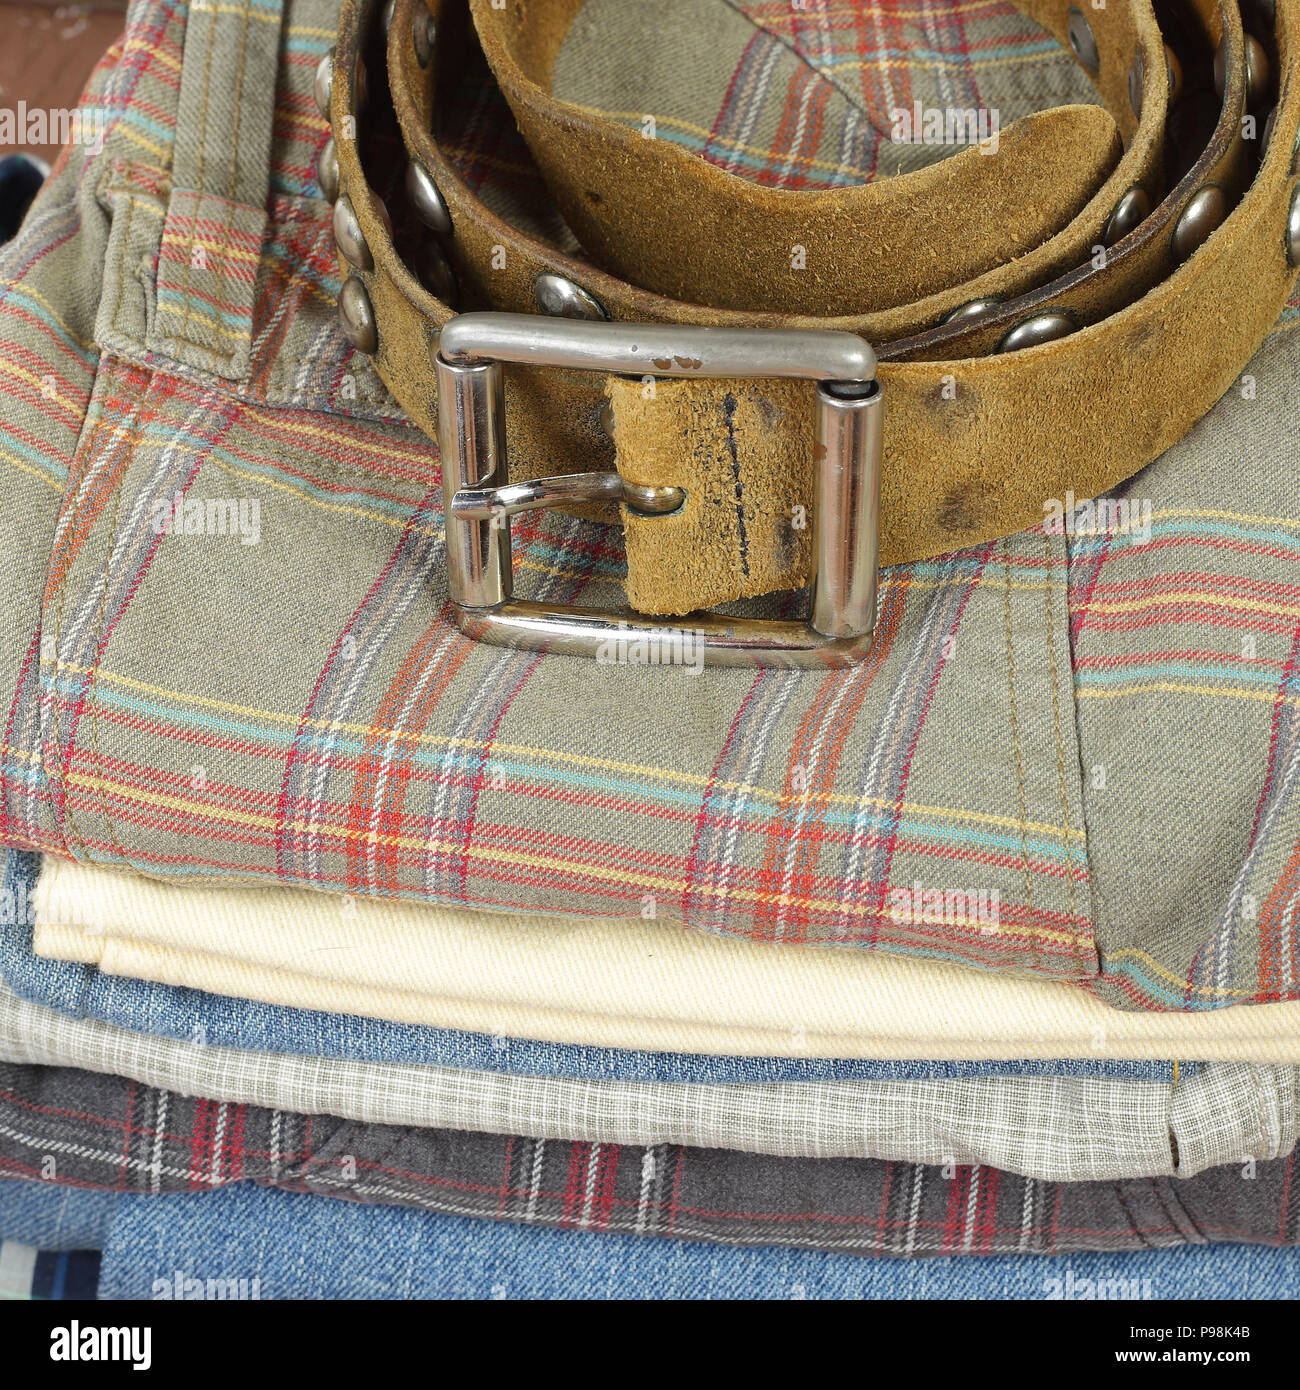 Vêtements, chaussures et accessoires - libre de ceinture de cuir et de groupe pioche de jeans colorés Banque D'Images